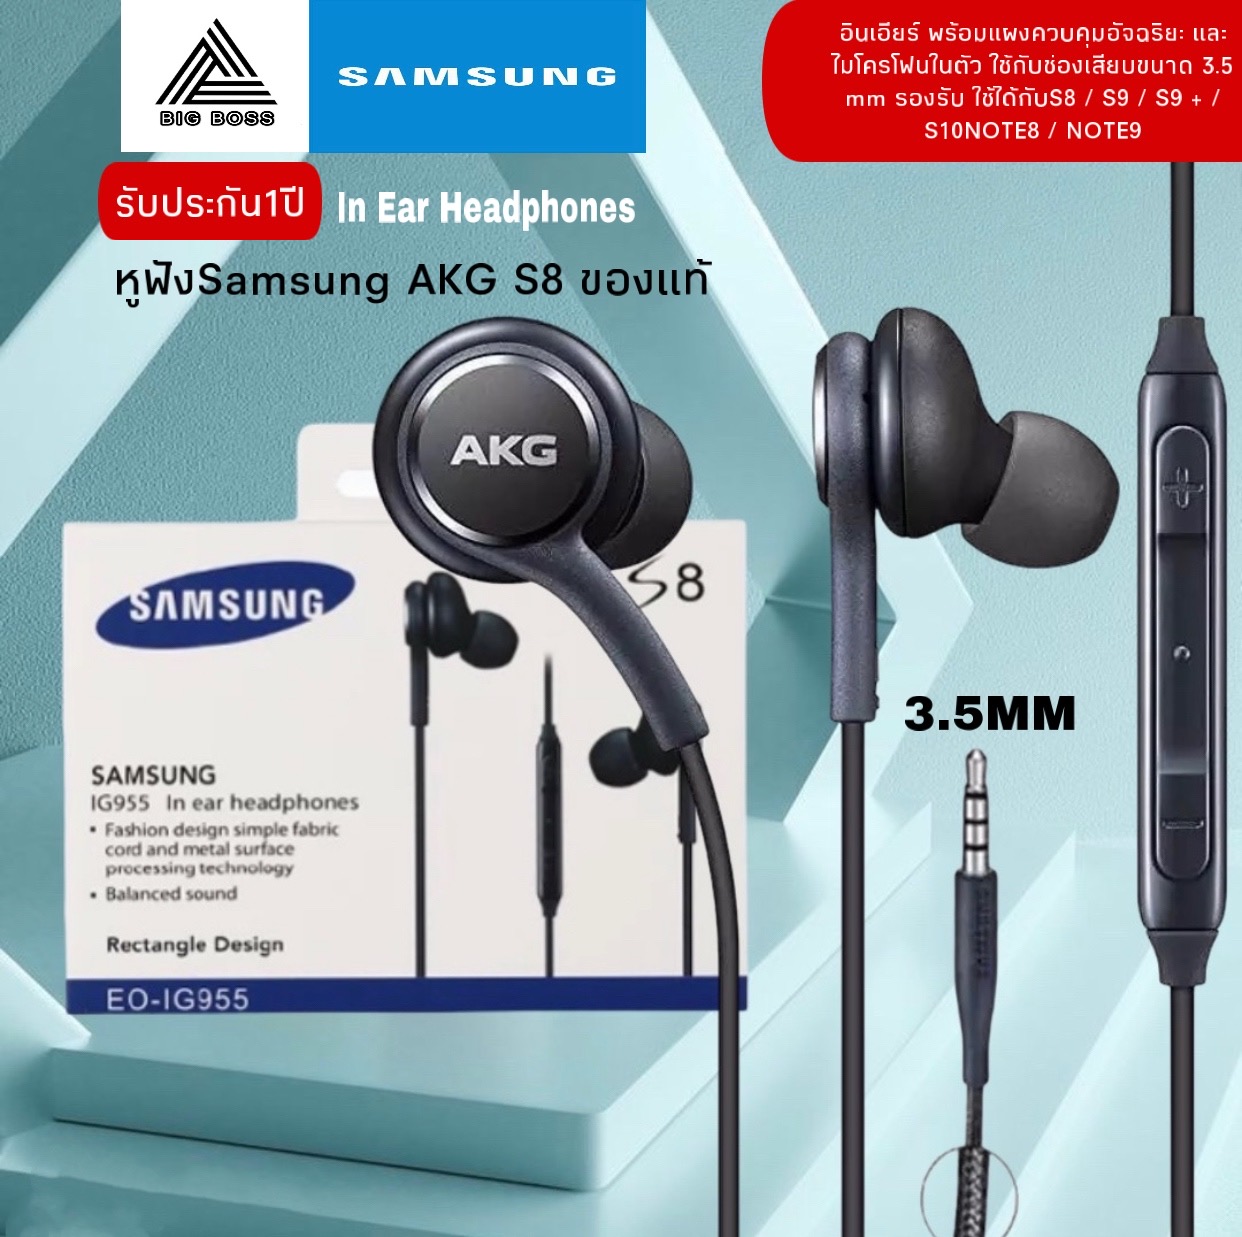 หูฟัง Samsung AKG ใช้กับช่องเสียบขนาด 3.5 mm รองรับ รุ่นS4 S6 S8 S8+ S9 S9+ Note8 9 / A5 /A7/A8/C7 pro /C9 pro รับประกัน 1 ปี By BIG BOSS